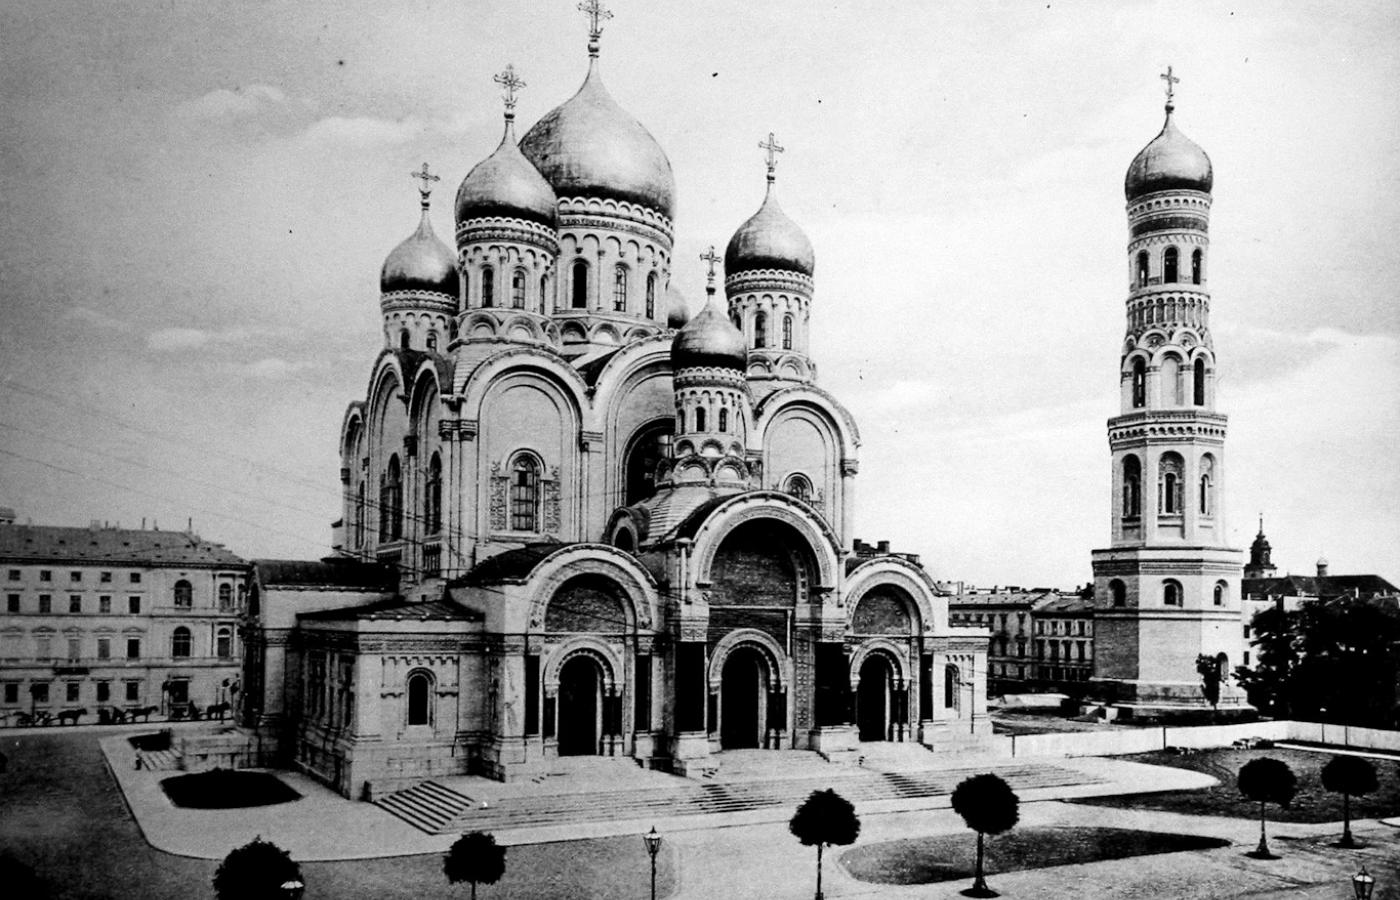 Cerkiew św. Aleksandra na pl. Saskim w Warszawie. Świątynia została zburzona w 1923 r.